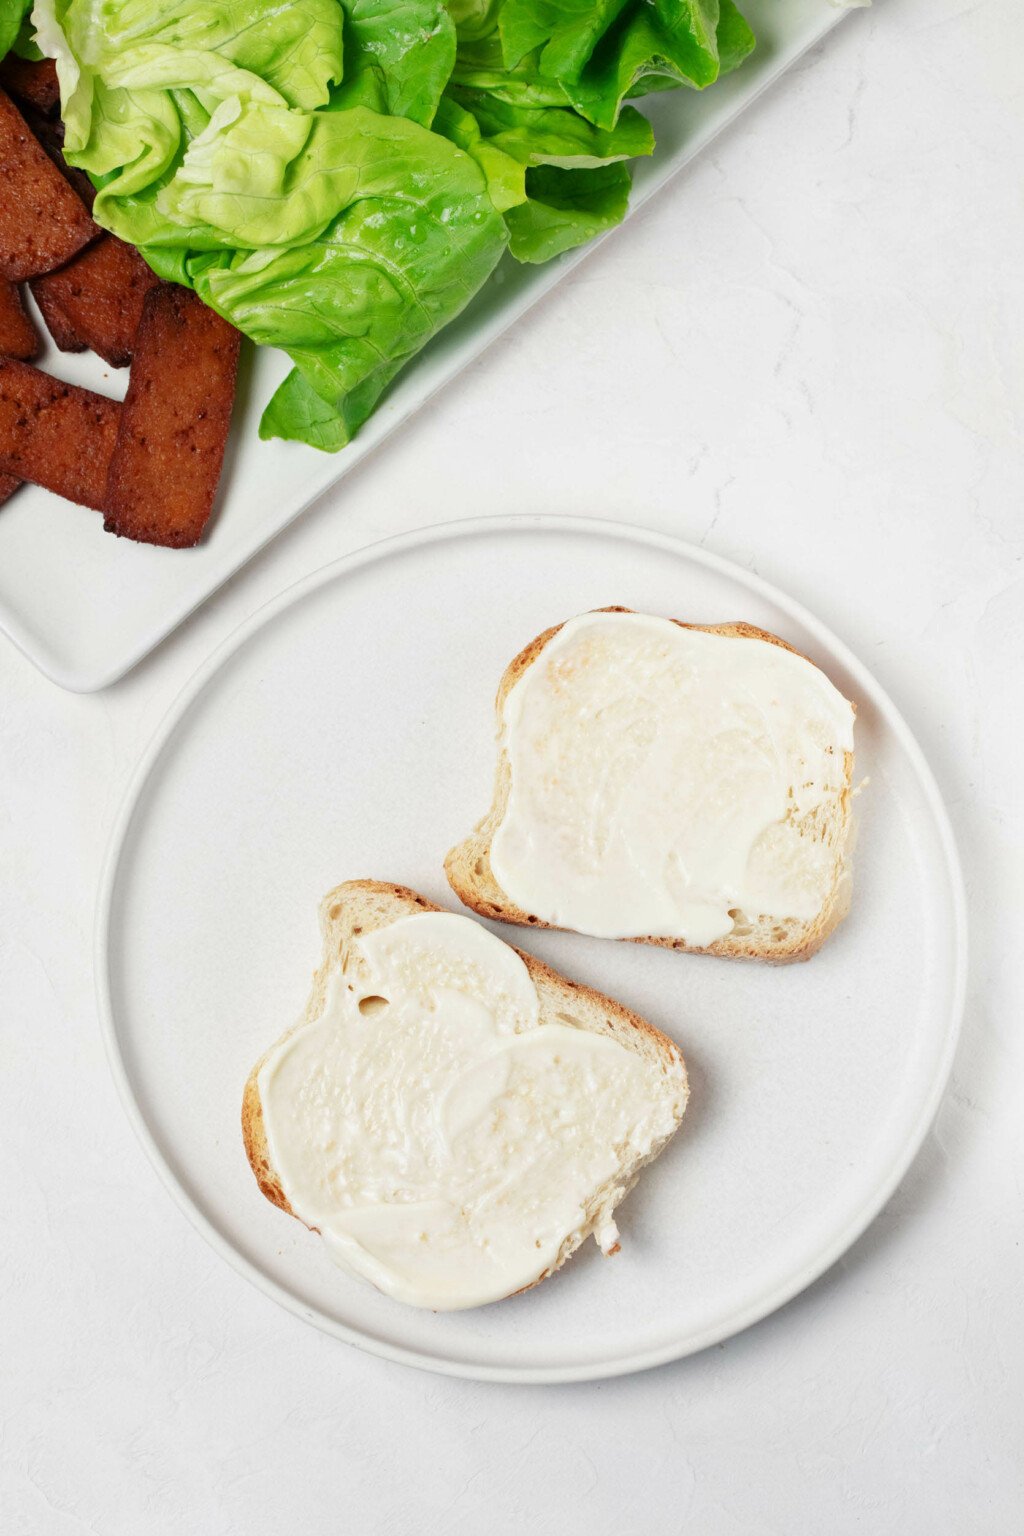 Μια εικόνα από πάνω της ρύθμισης για την προετοιμασία ενός σάντουιτς.  Δύο φέτες ψωμιού επικαλύπτονται με κρεμώδη, κρεμ μαγιονέζα.  Ένας δίσκος με λαχανικά και τόφου είναι κοντά.